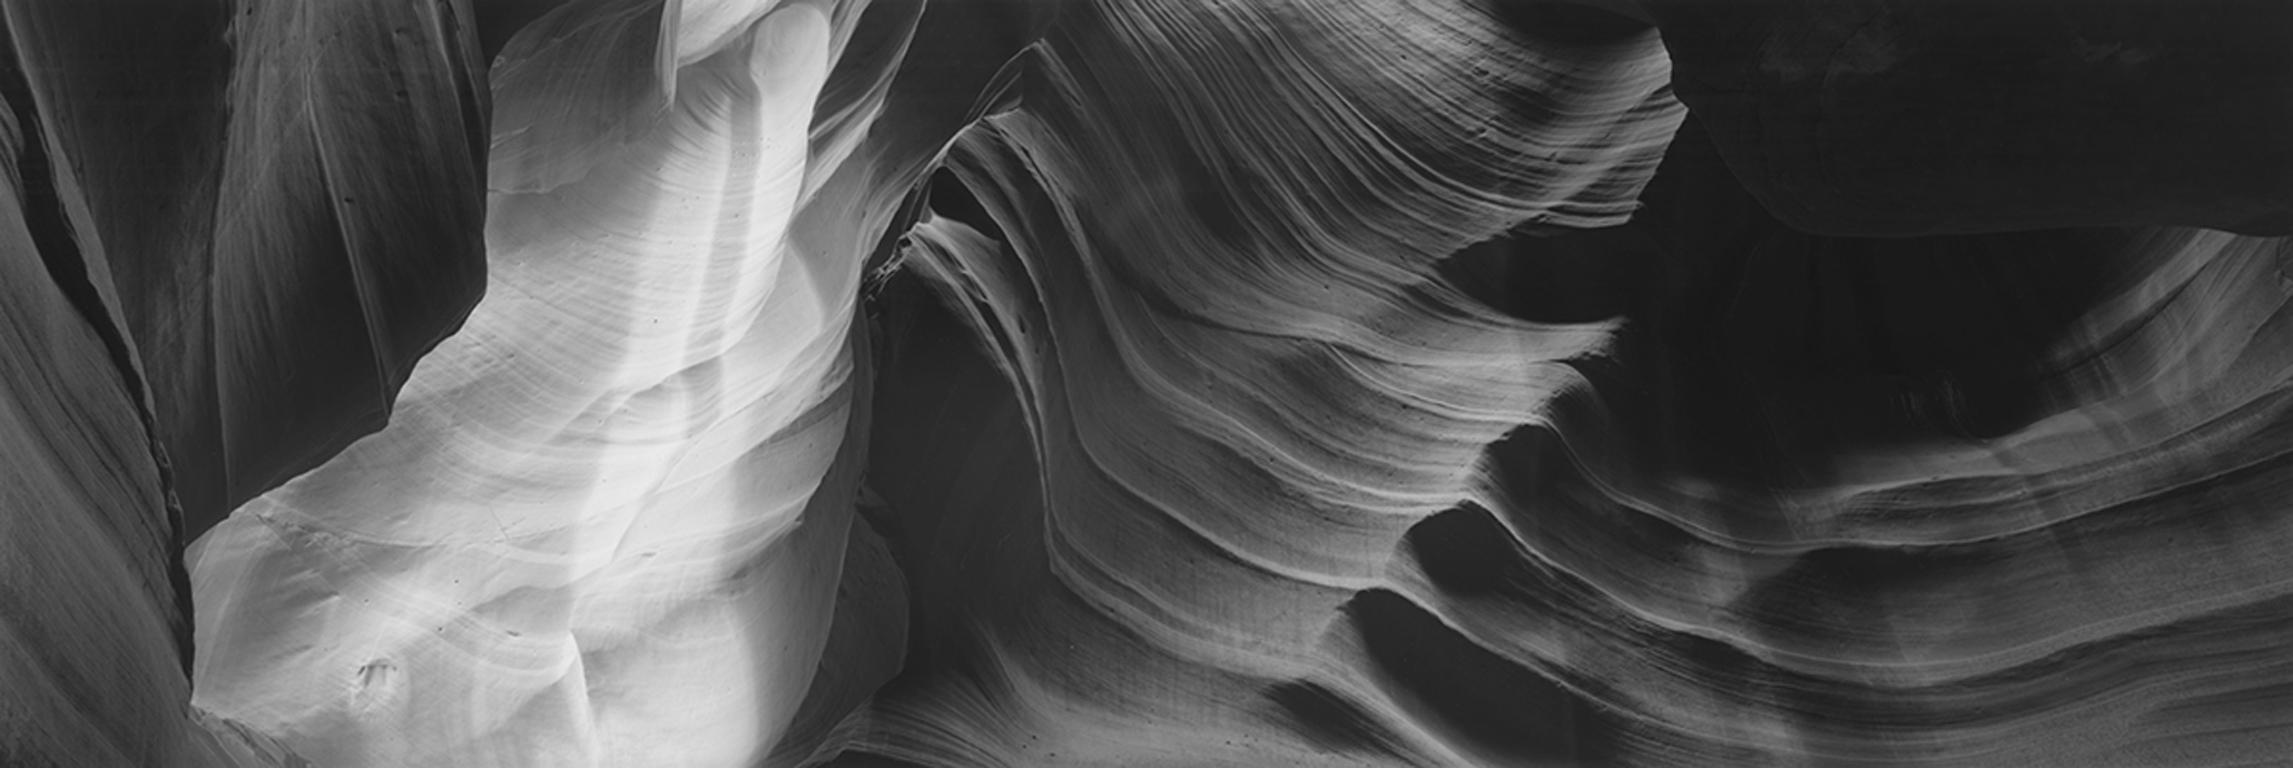 Landscape Photograph David H. Gibson - Danse de la vague, Formation du grès, Page, Arizona